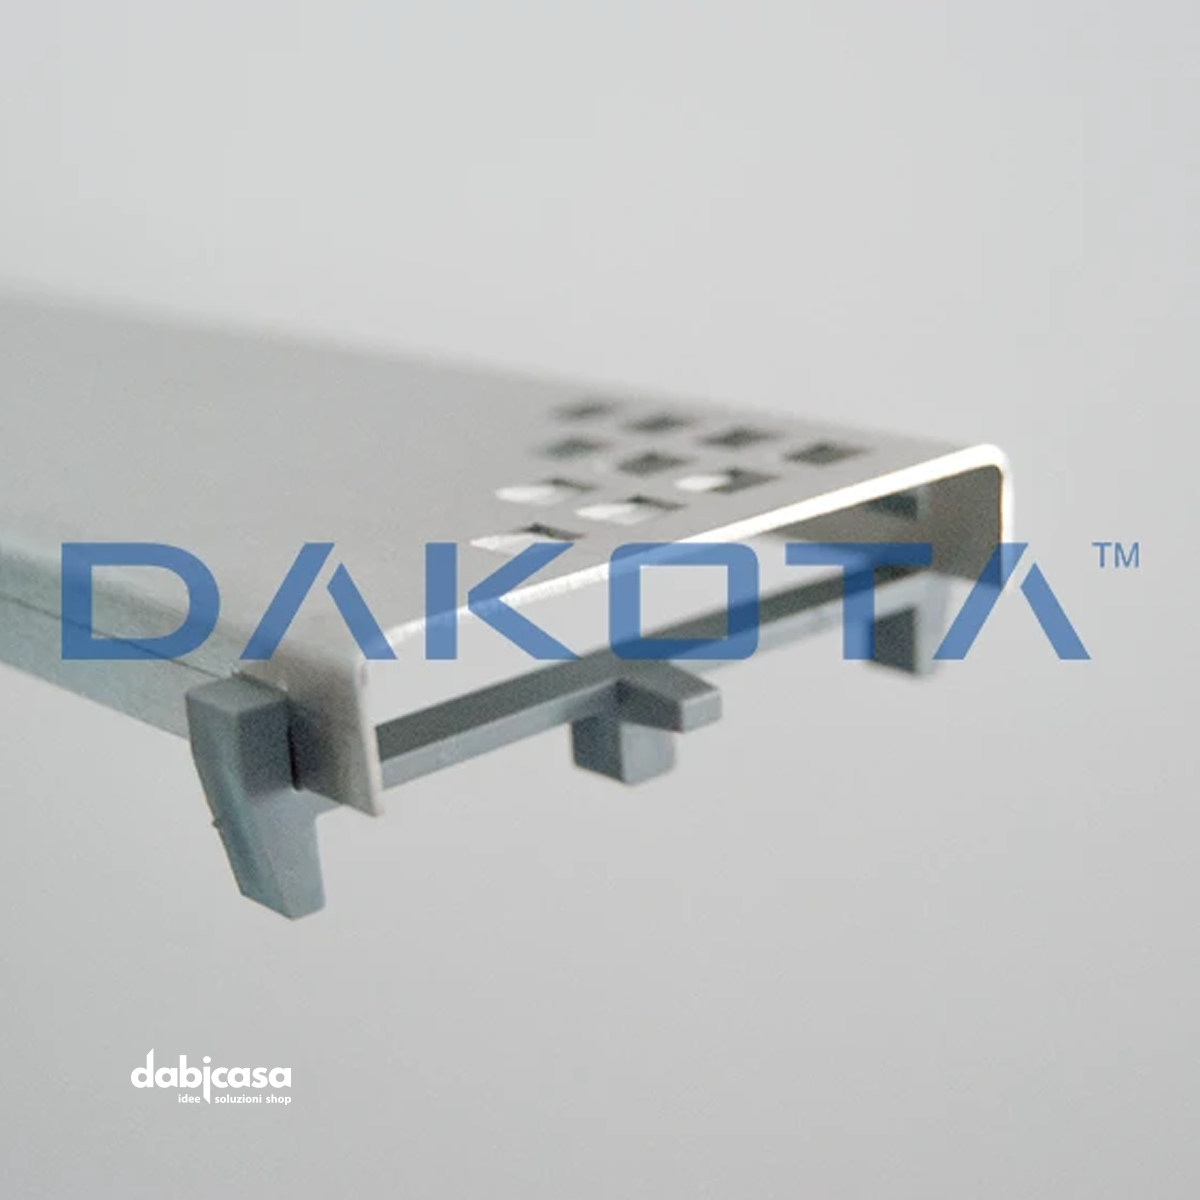 Dakota "Dakua" Canalina di Scarico Da 80 cm C/Griglia Raccogli Acqua In Acciaio Inox freeshipping - Dabicasa